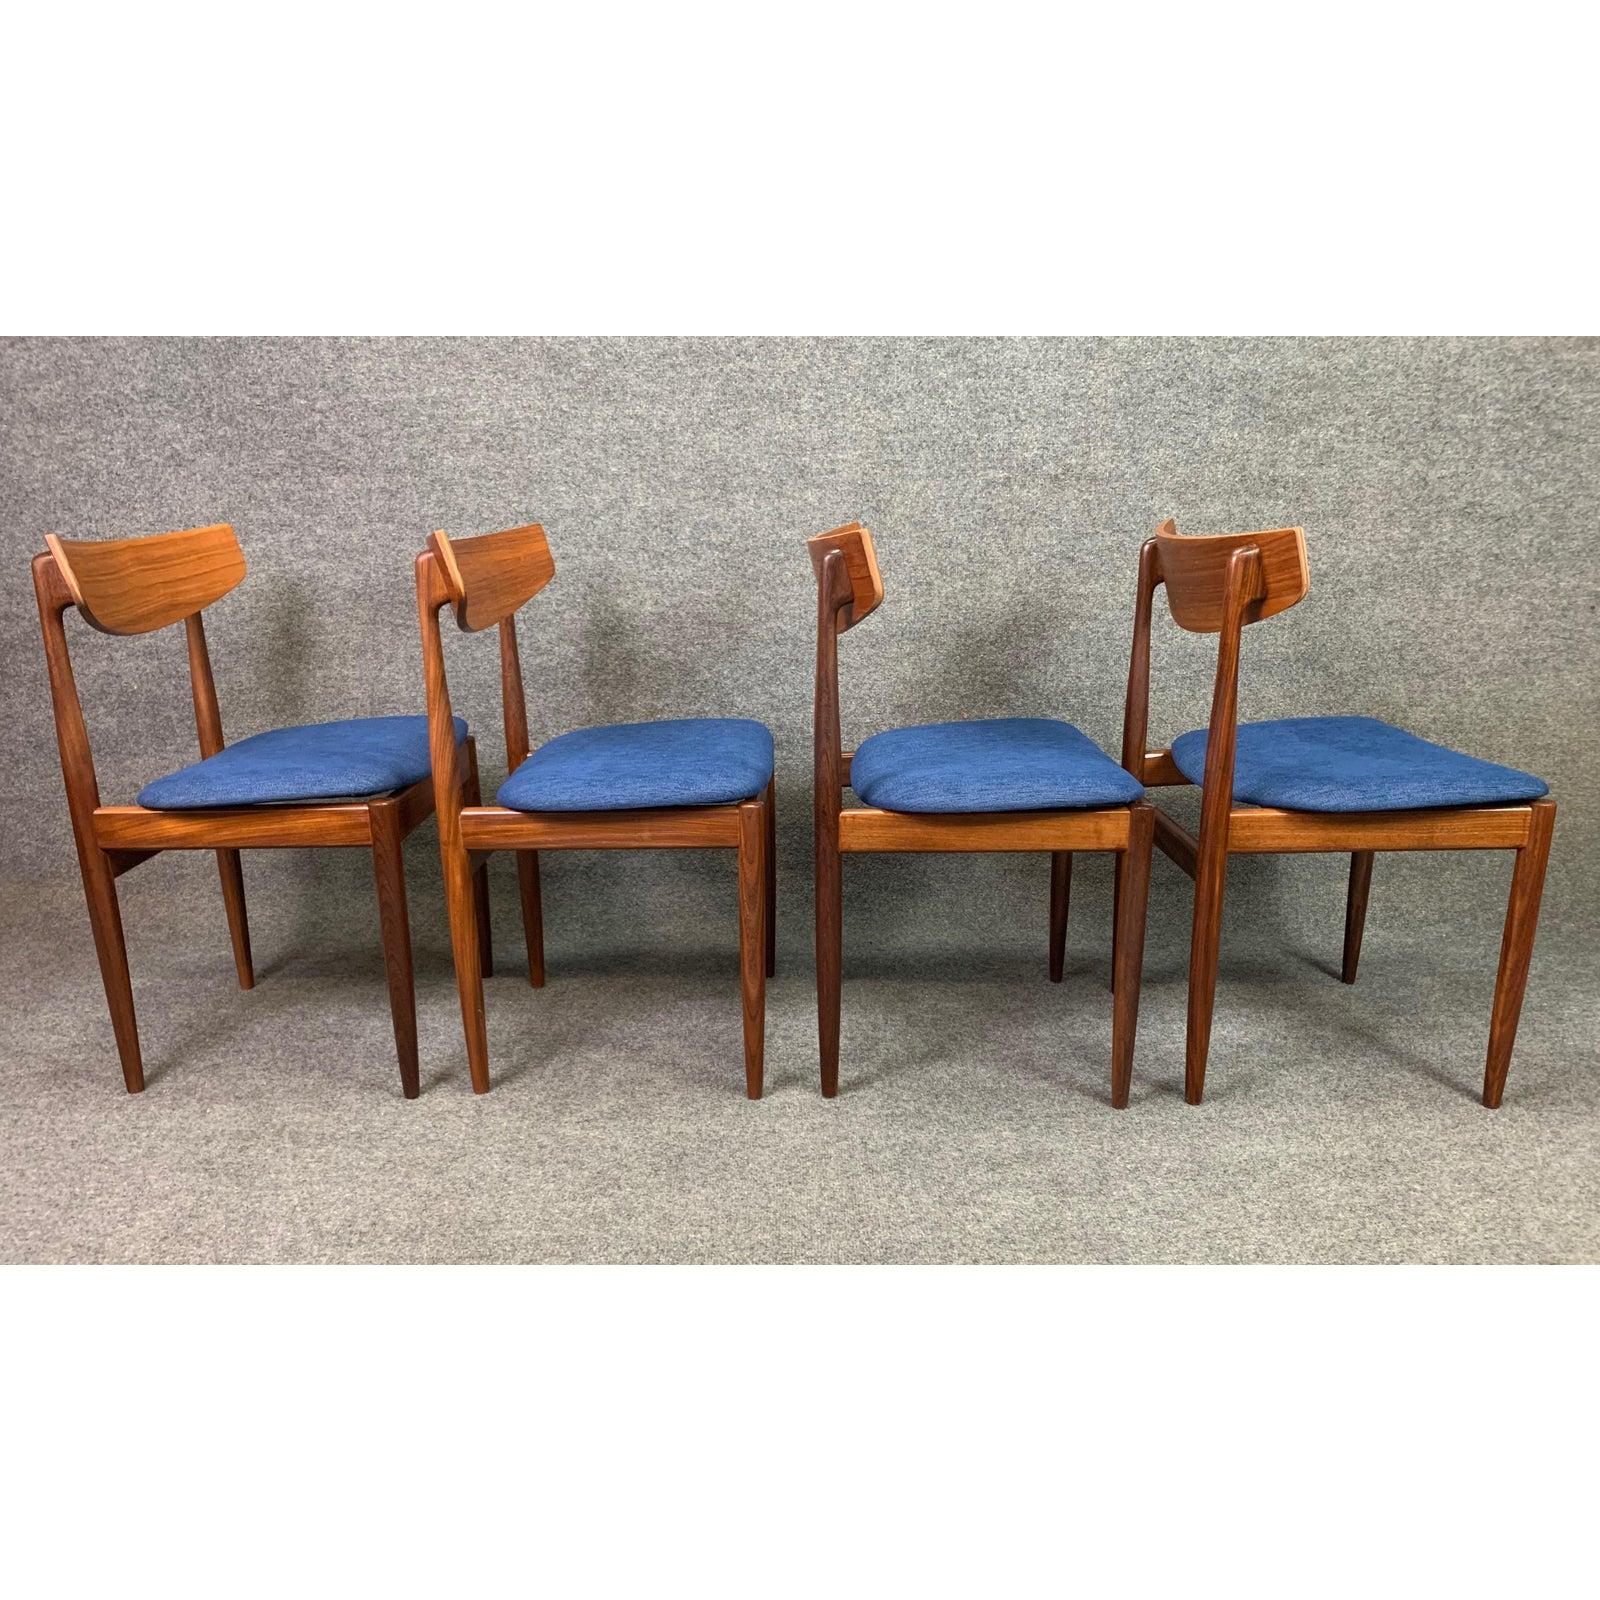 Set of 4 Vintage British Midcentury Teak Dining Chairs by Kofod Larsen & G Plan 2